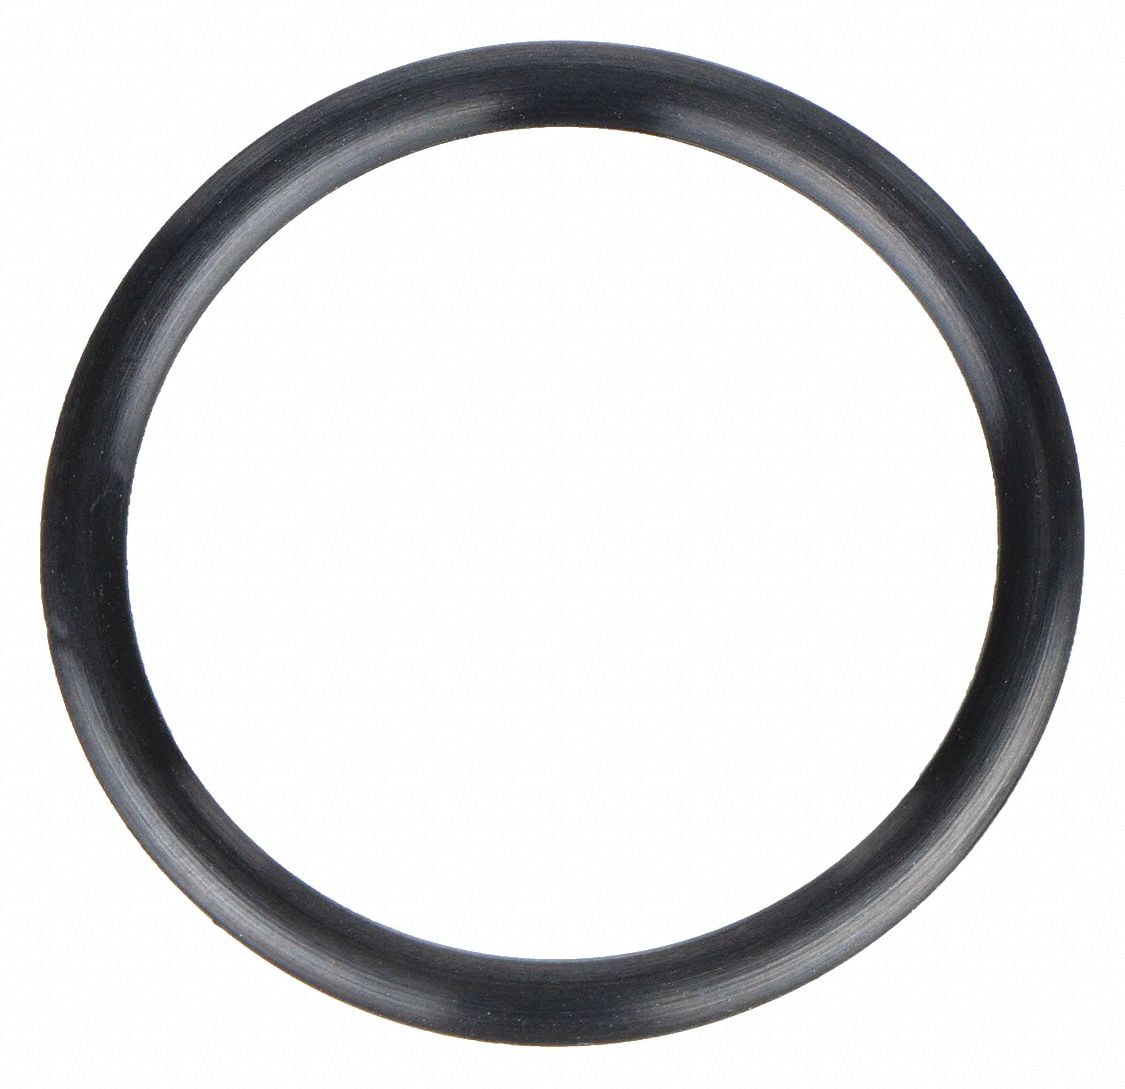 100 EA per Pack Oil-Resistant Buna N O-Rings -113 9/16'' Diameter